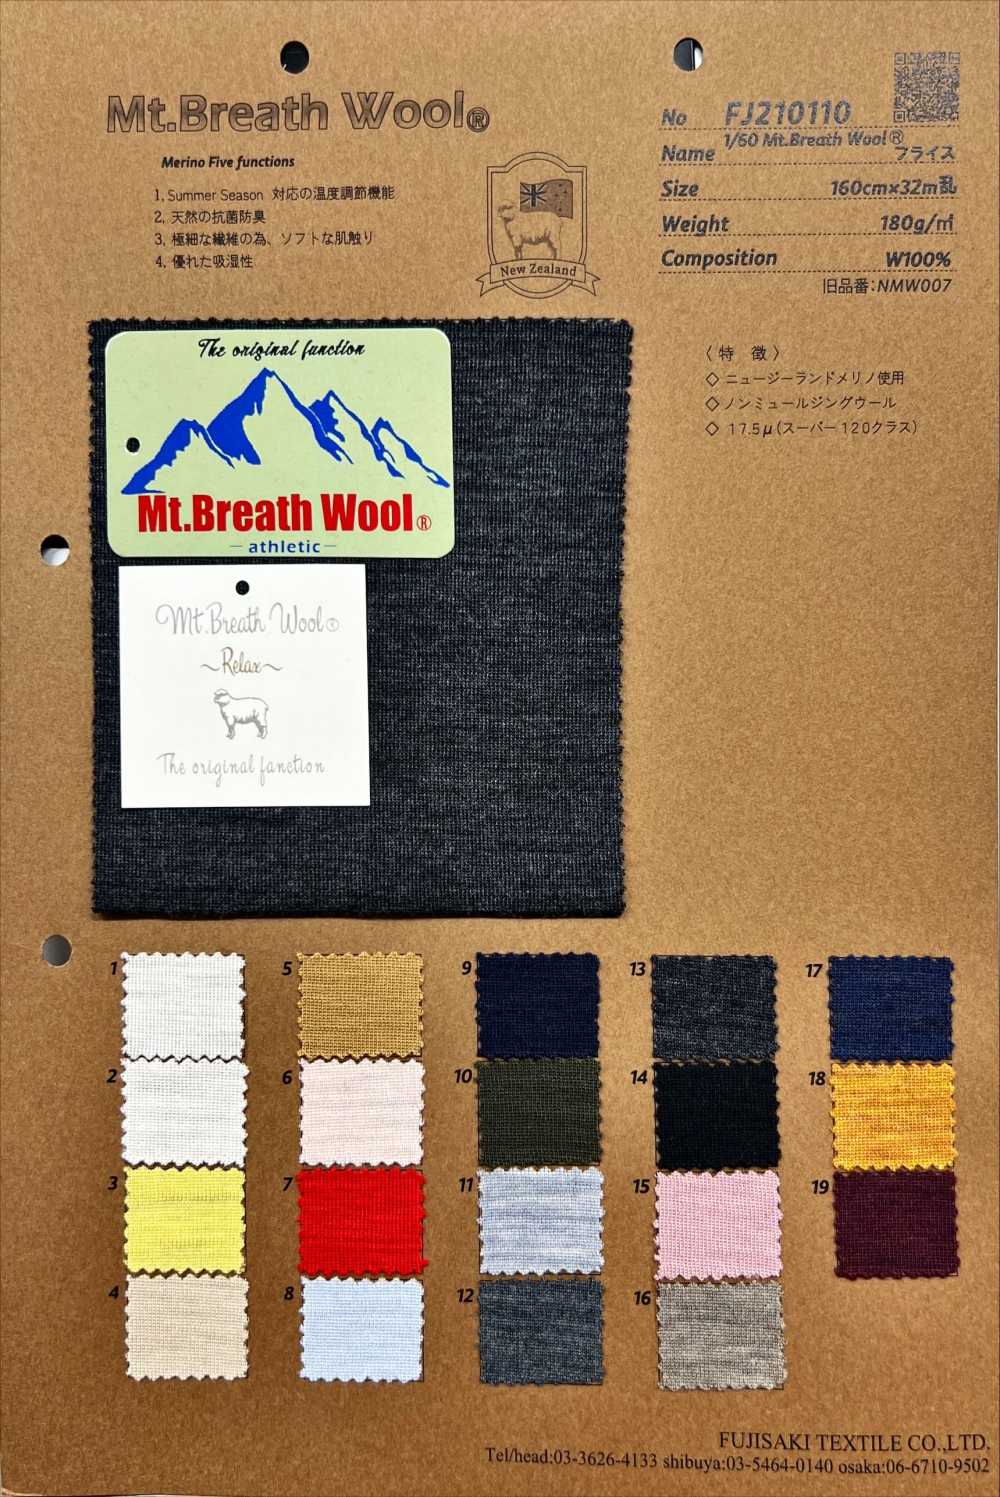 FJ210110 1/60 Mt.Breath 羊毛針織羅紋[面料] Fujisaki Textile